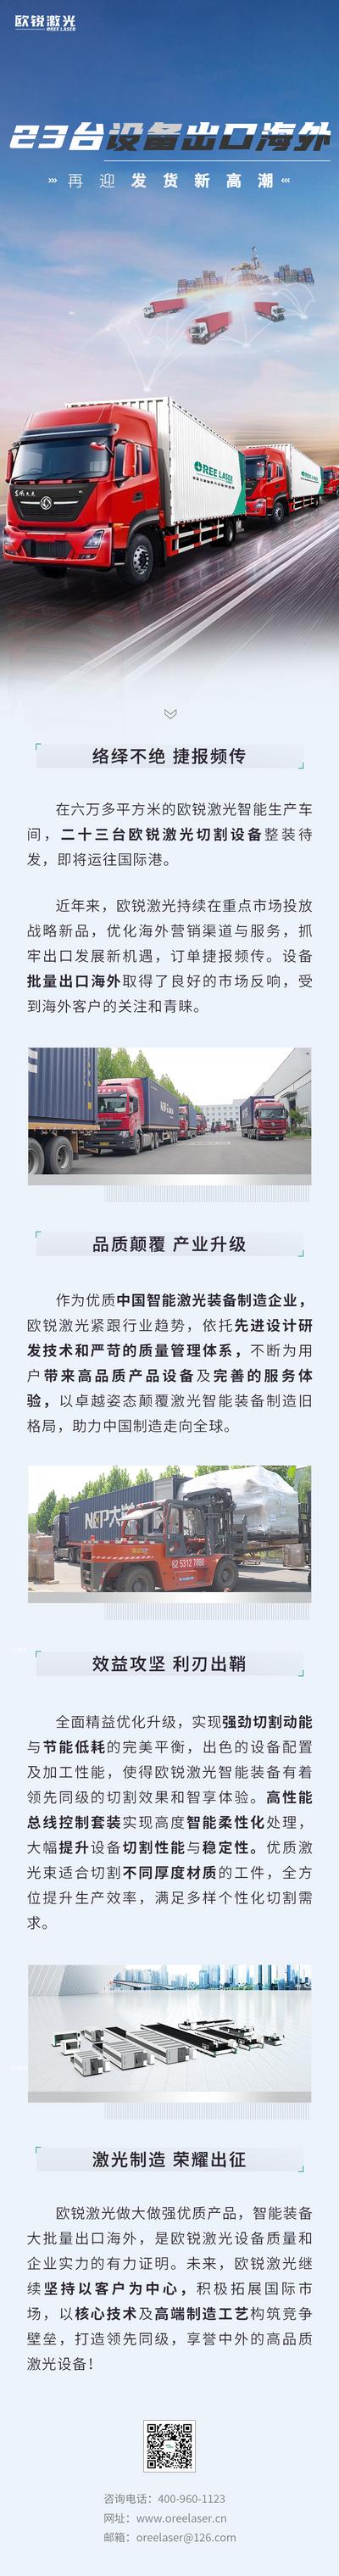 南门网 广告 海报 背景板 电商 长图 主画面 汽车 推文